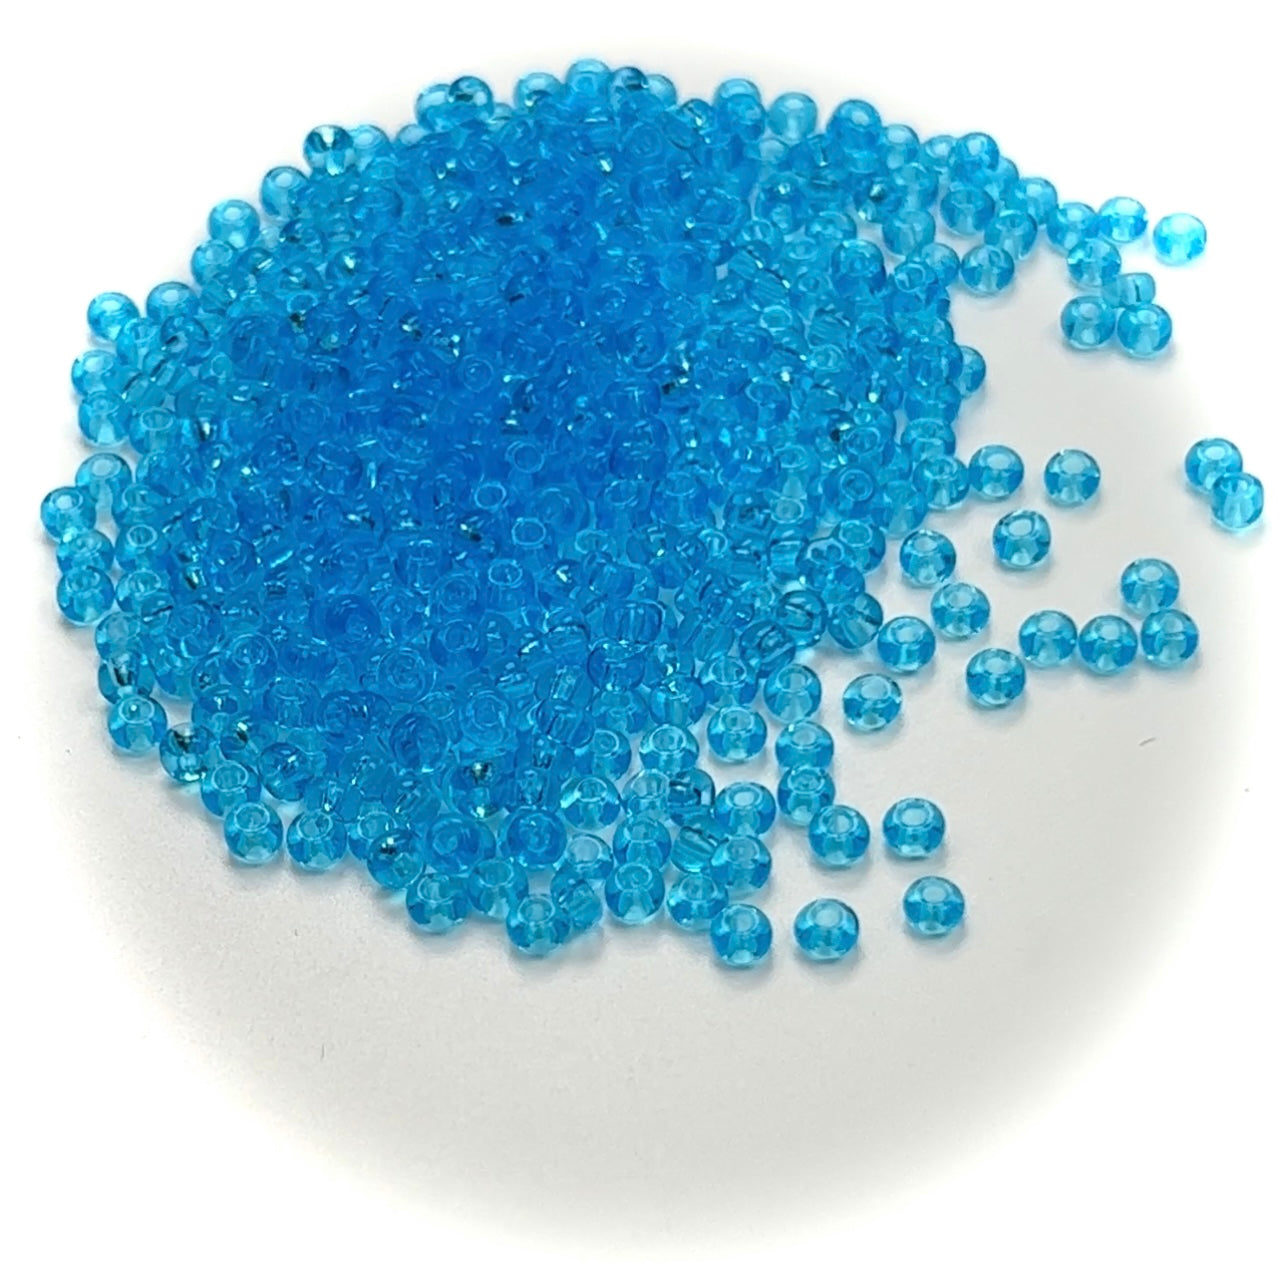 Rocailles size 6/0 (4mm) Aquamarine Blue Transparent, Preciosa Ornela Traditional Czech Glass Seed Beads, 30grams (1 oz), P969